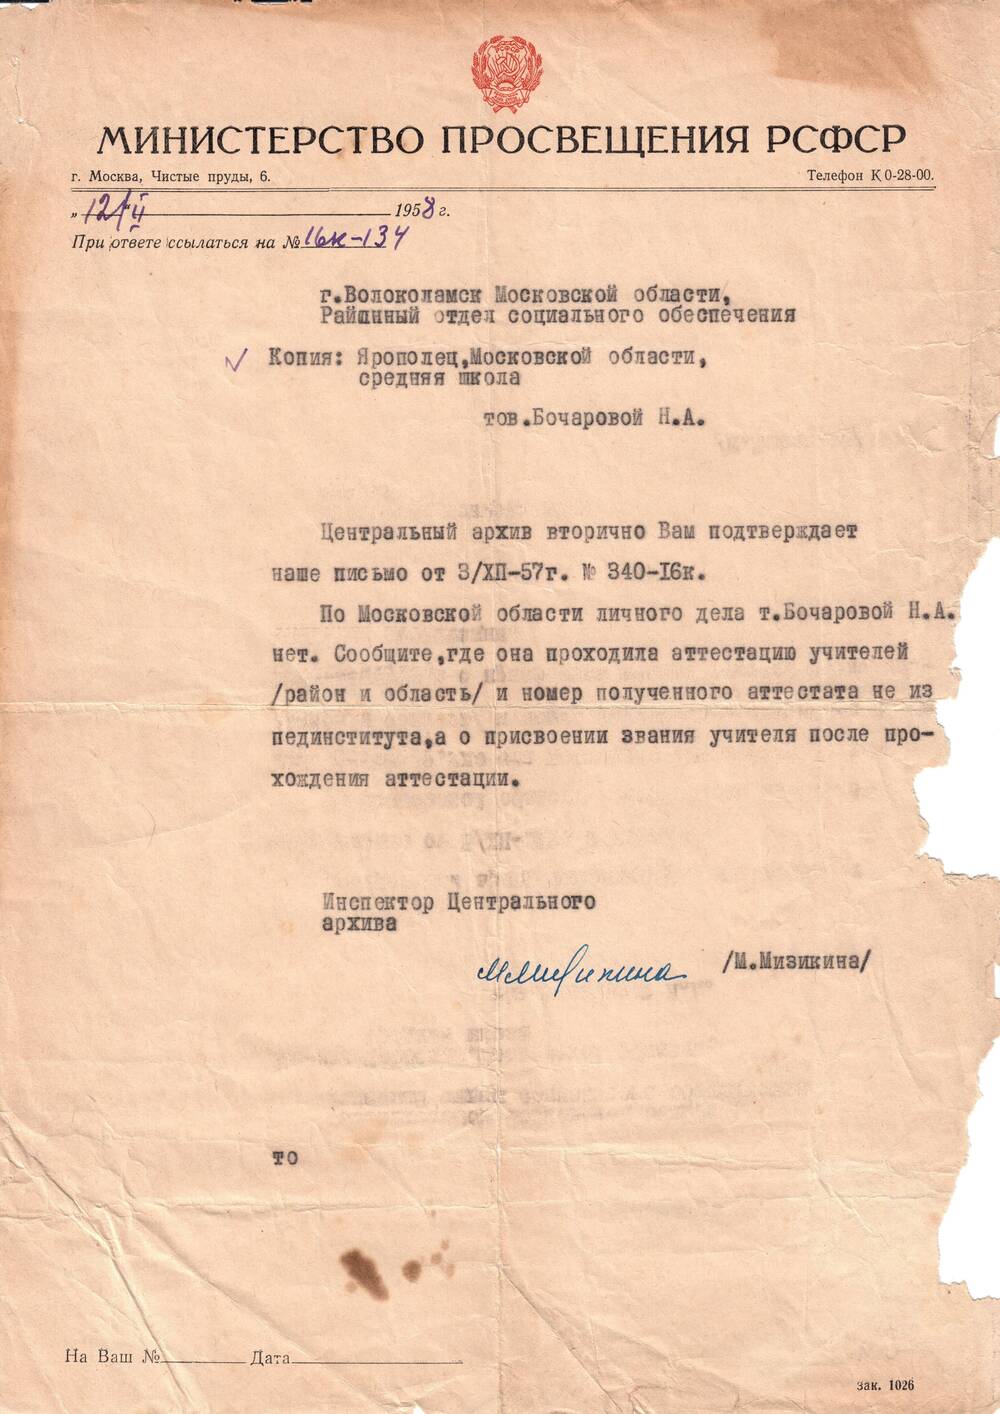 Письмо Бочаровой Н. А. на официальном бланке Министерства просвещения РСФСР от 12/II 1958 г. за № 16-к - 134.